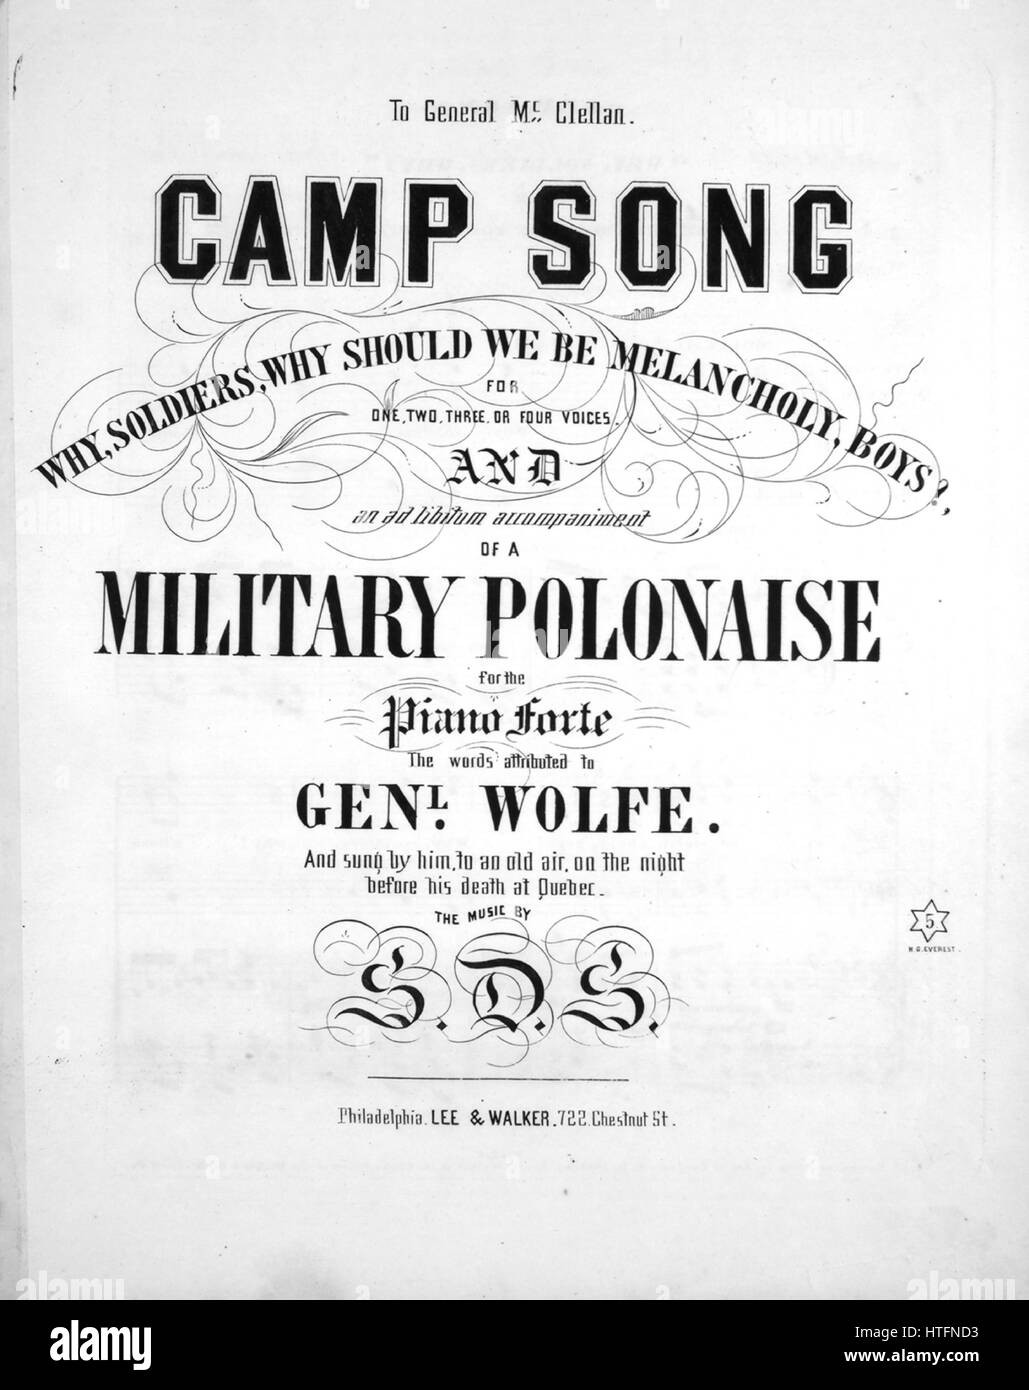 Imagen de cubierta de partituras de la canción "Qué canción del campamento,  los soldados, ¿por qué deberíamos estar melancólico, Boys para uno, dos,  tres o cuatro voces y un acompañamiento de un